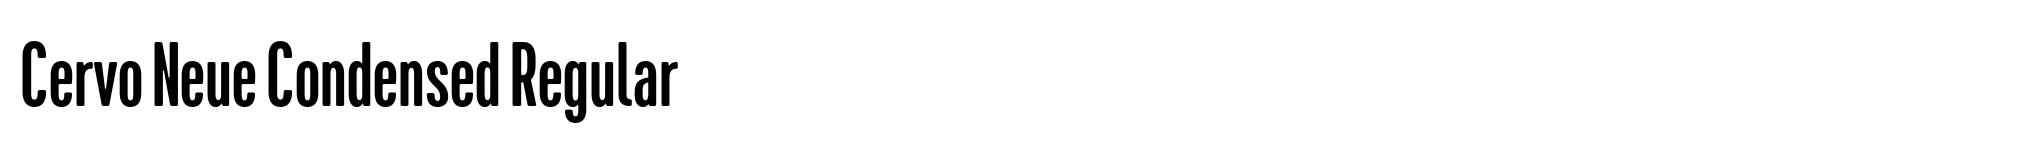 Cervo Neue Condensed Regular image